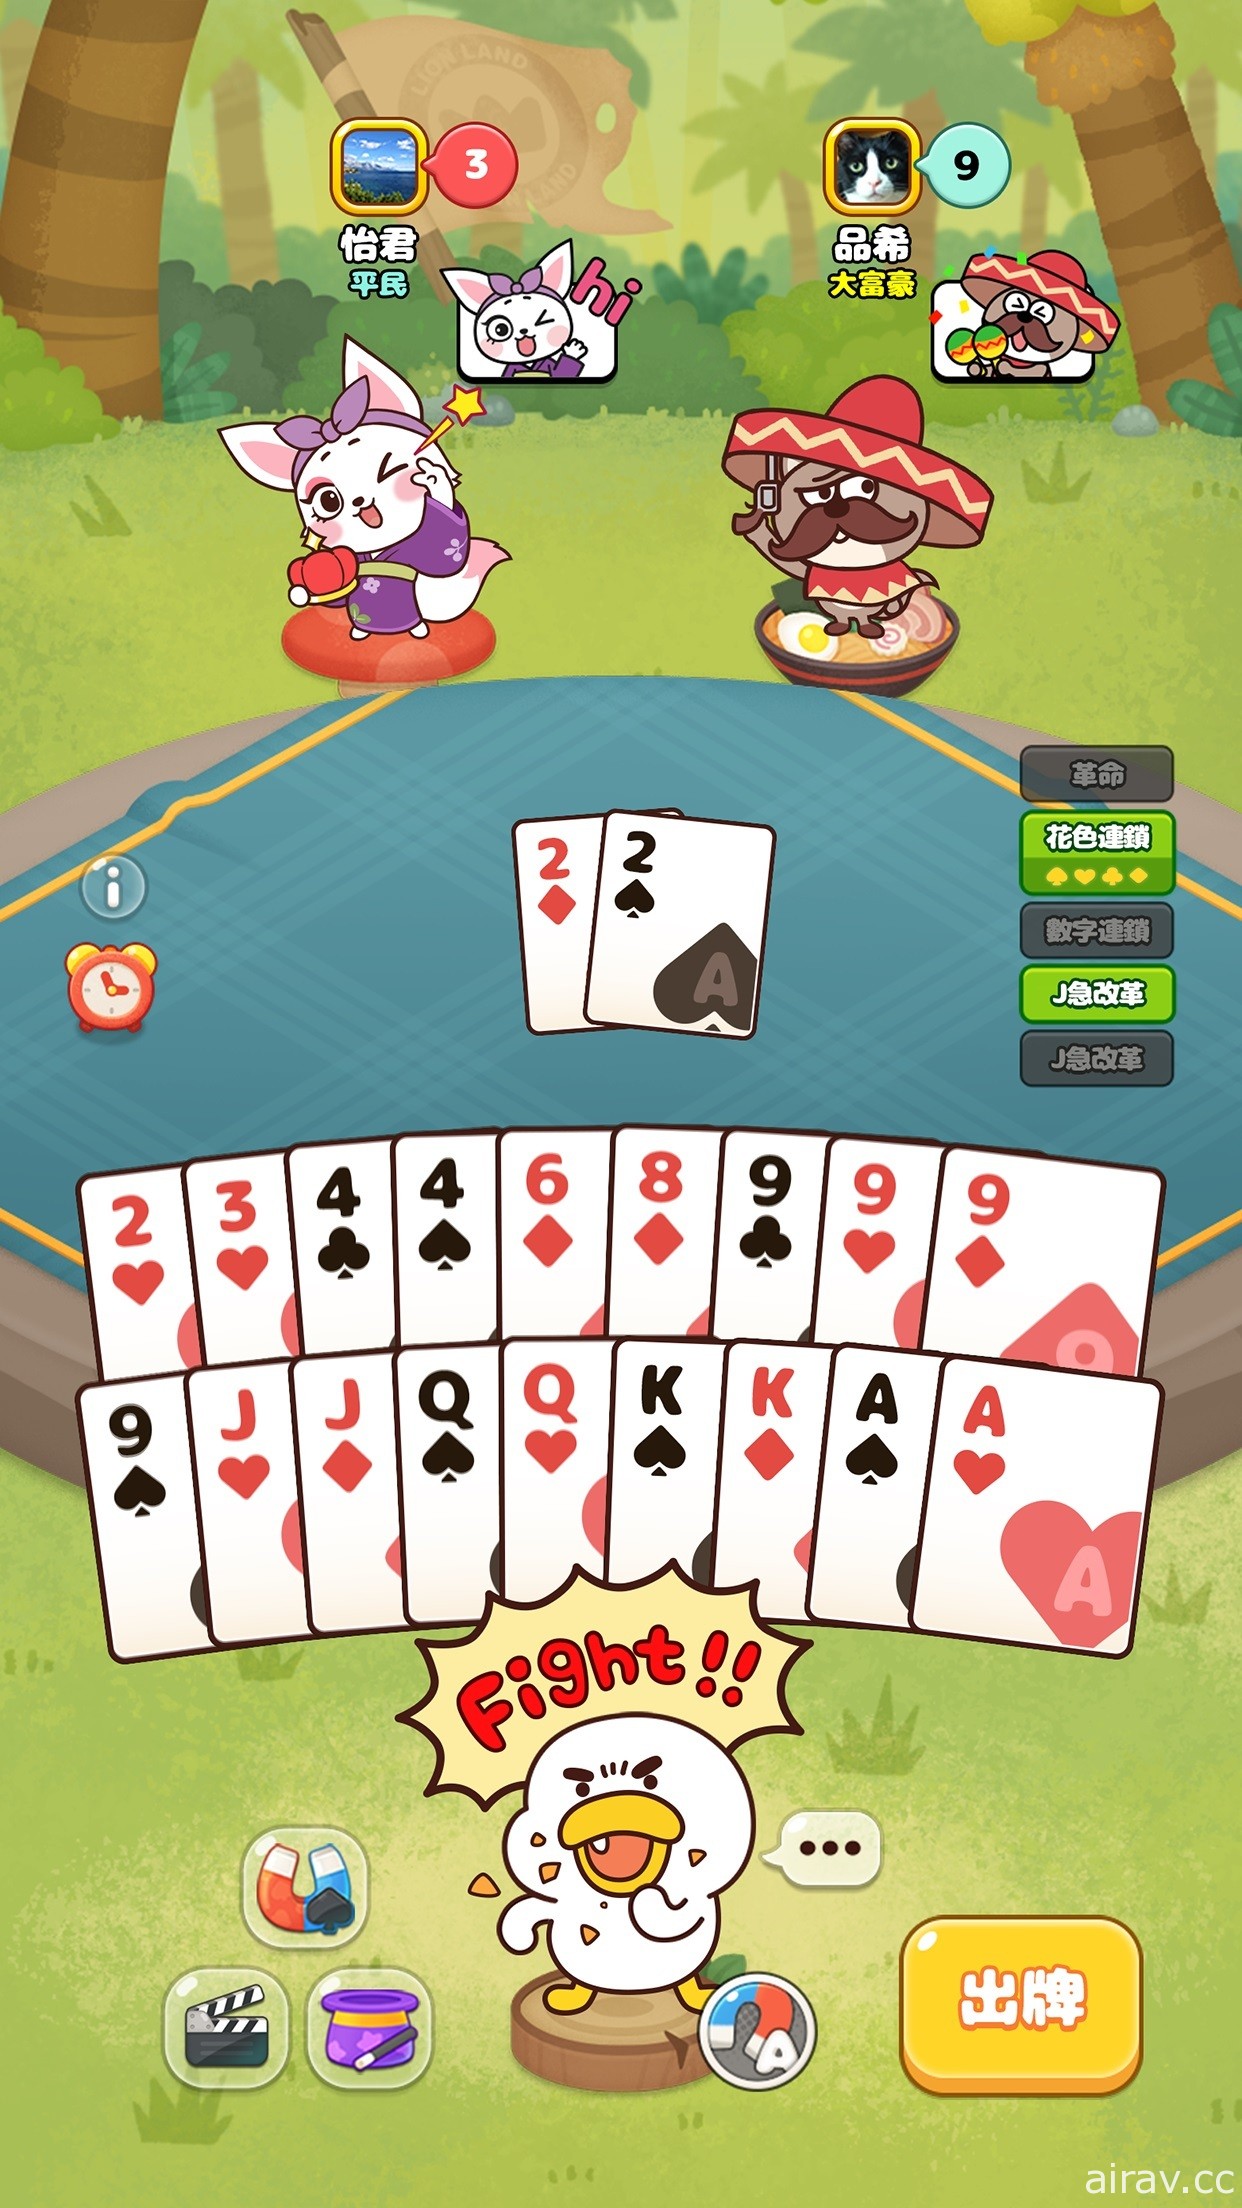 卡牌游戏《LINE 动物大富豪》宣布将于 5 月 31 日结束营运